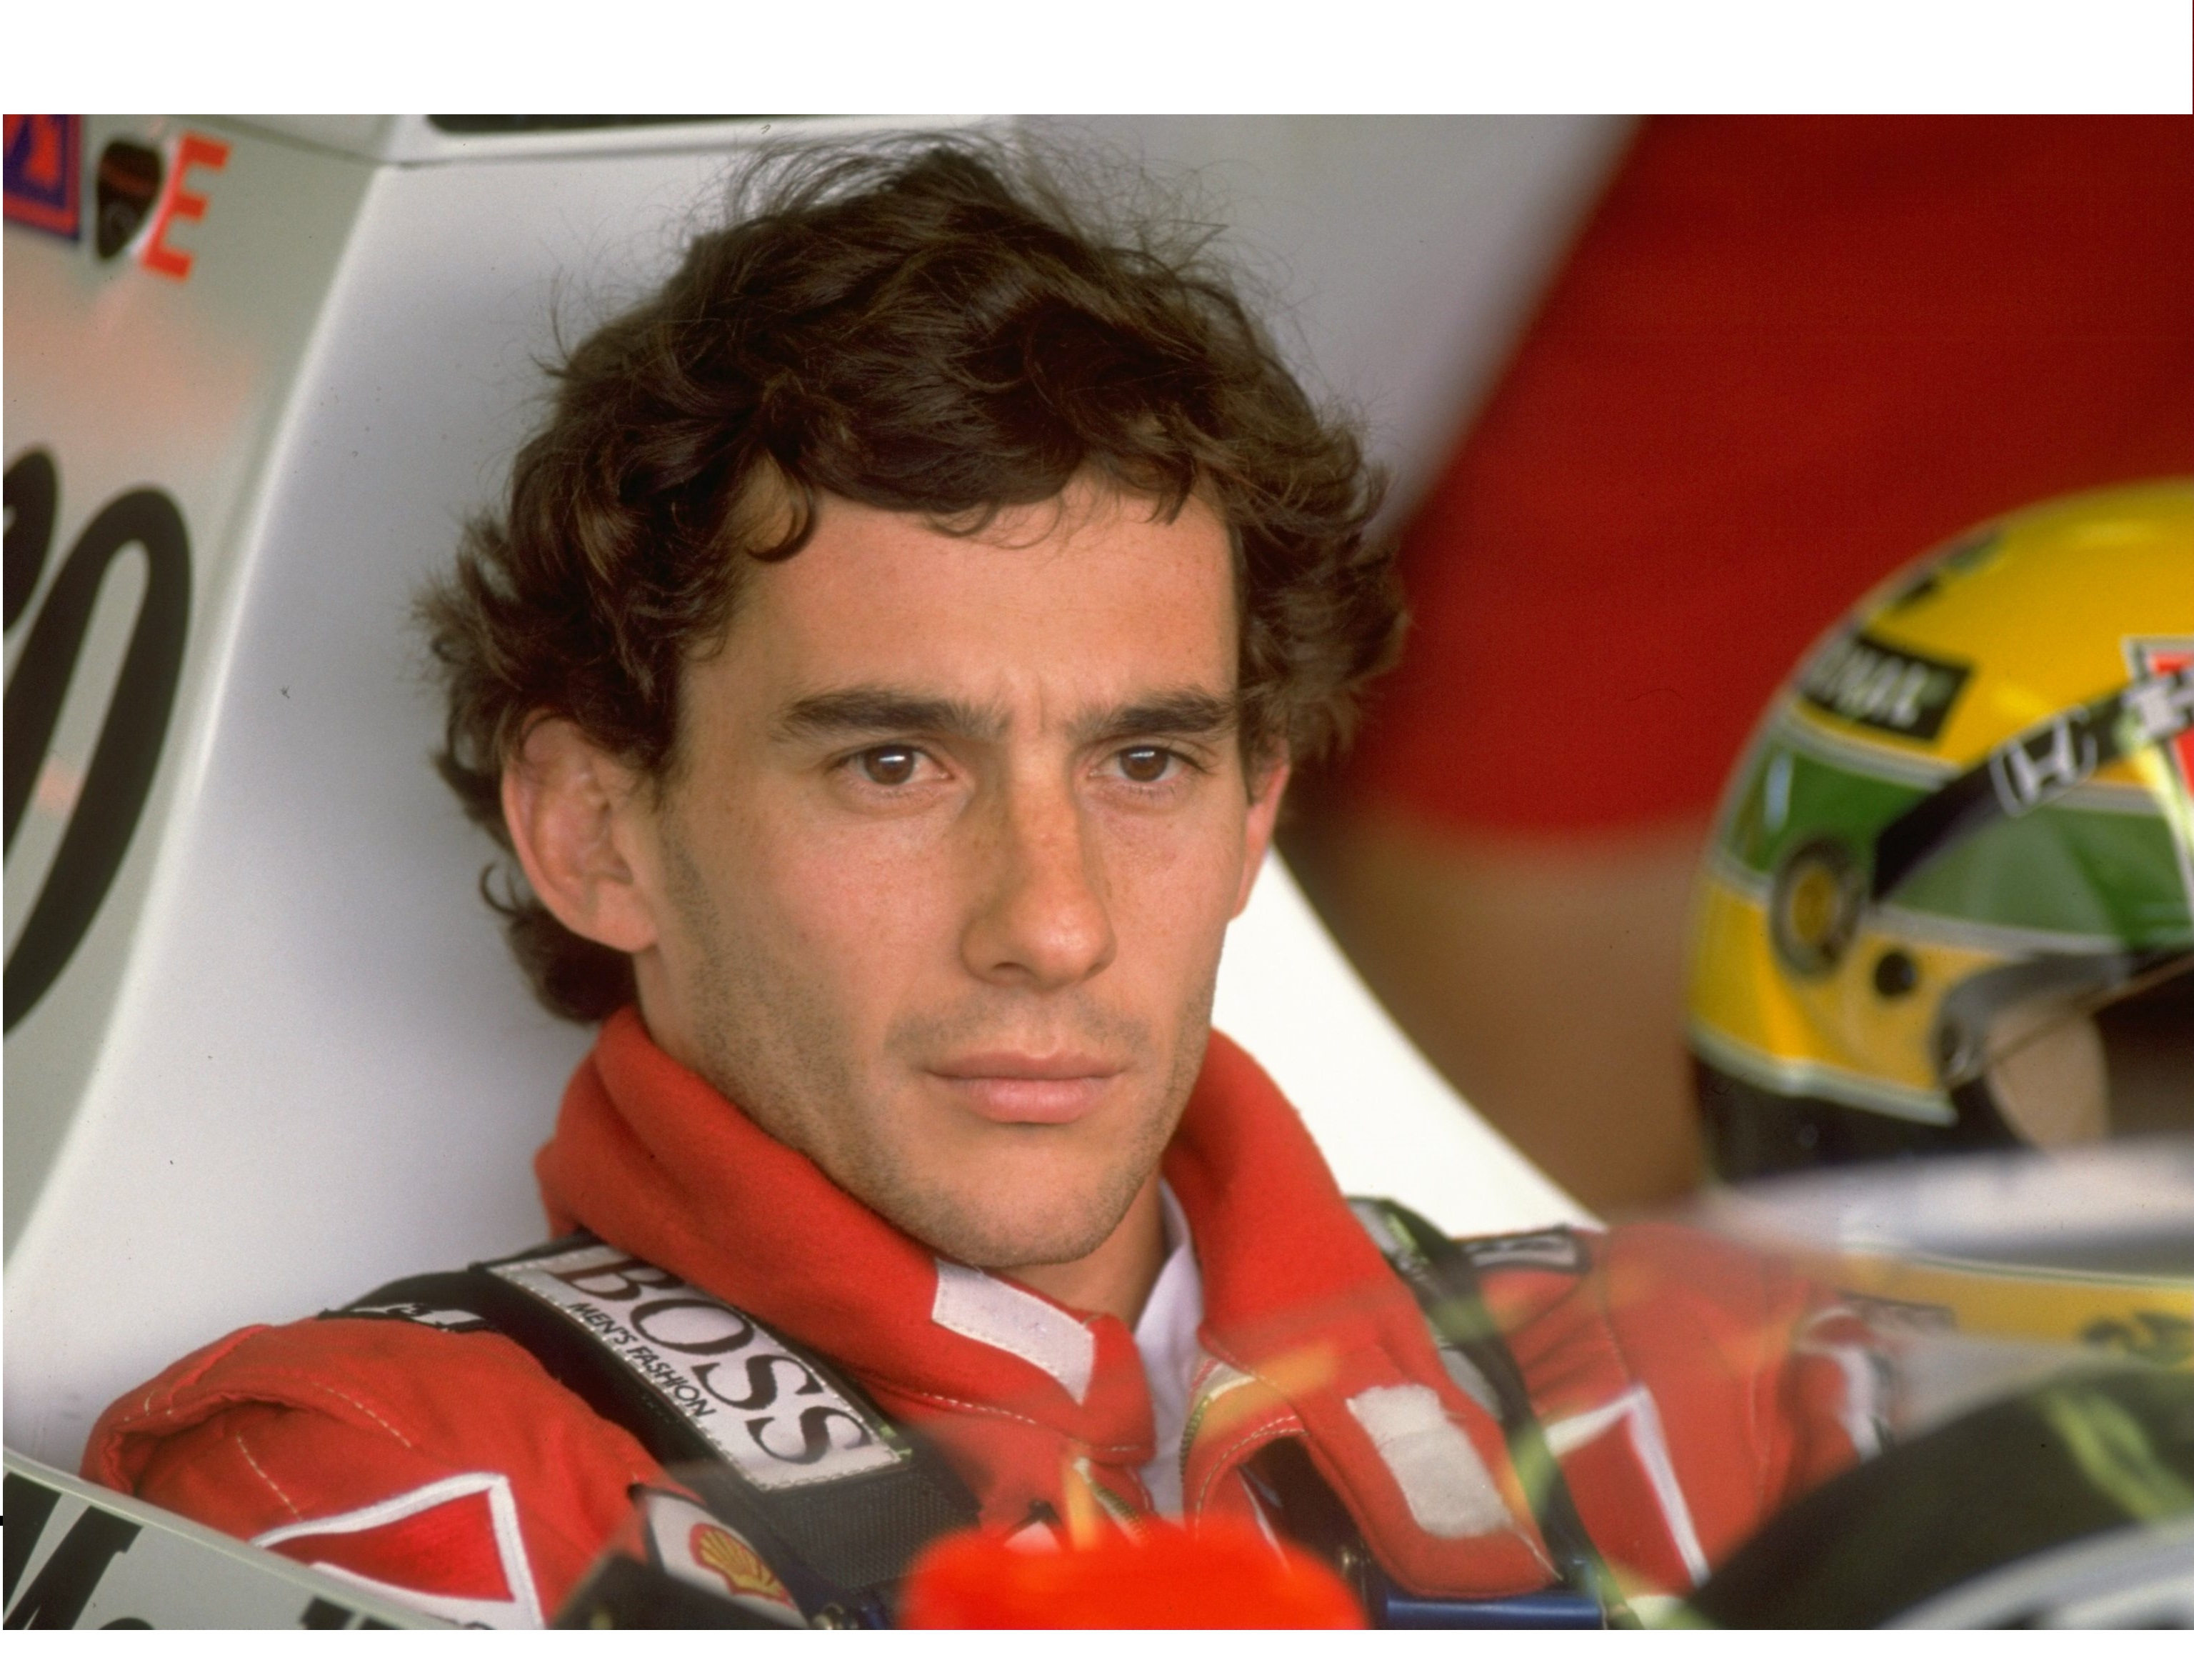 La muerte de Ayrton Senna: los misterios y la negligencia detrás de la tragedia